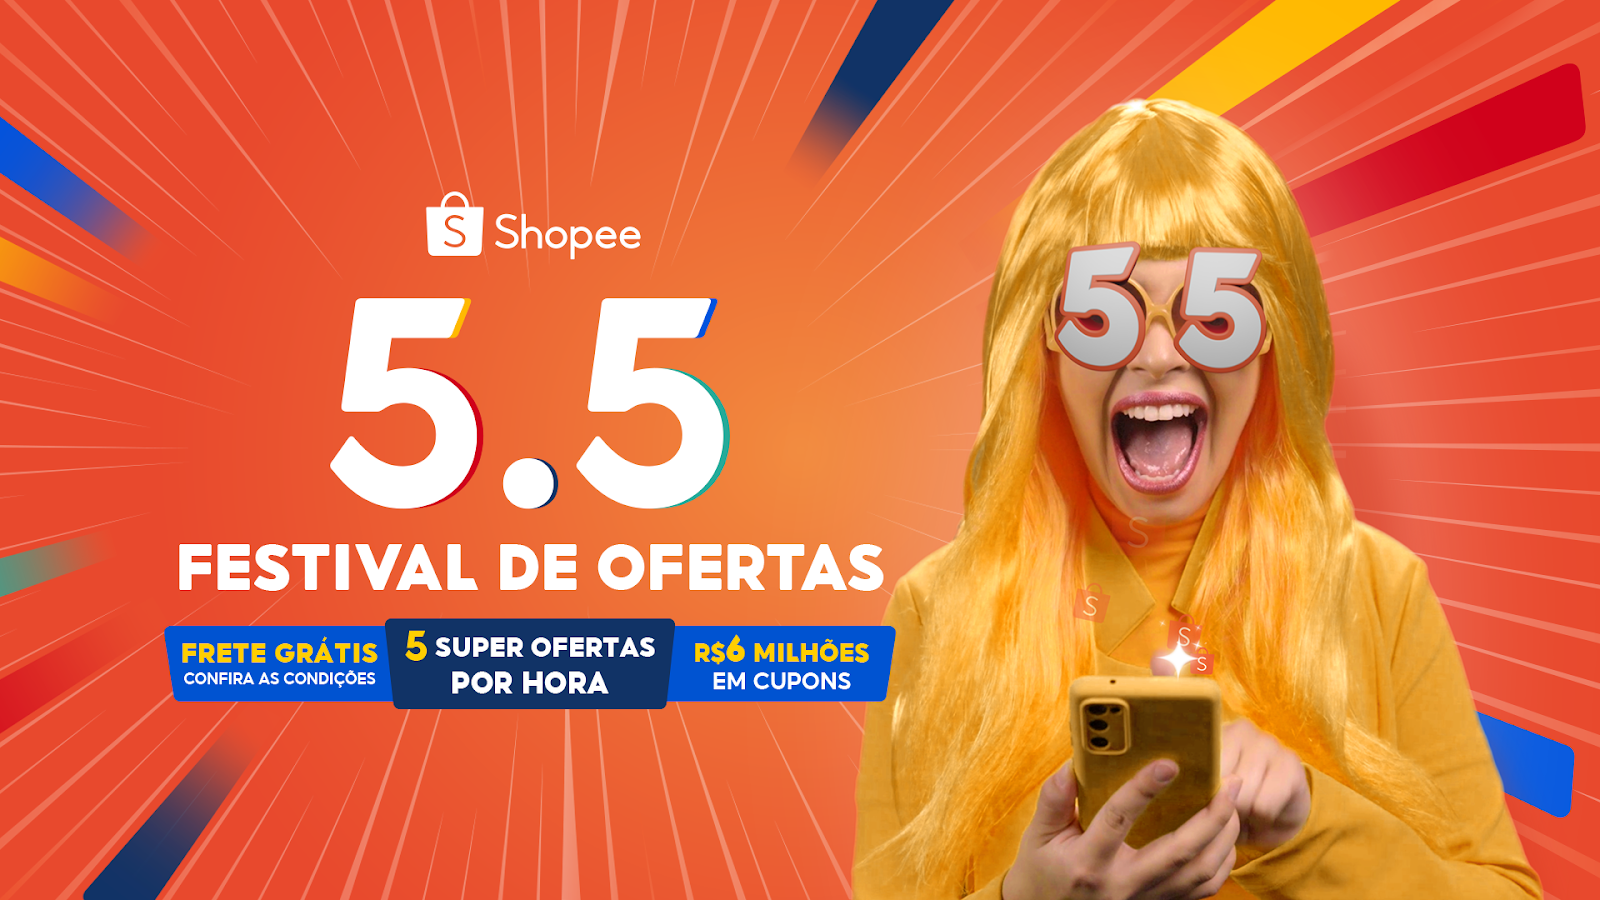 Shopee: Festival de Ofertas 5.5 distribui R$ 6 milhões em cupons